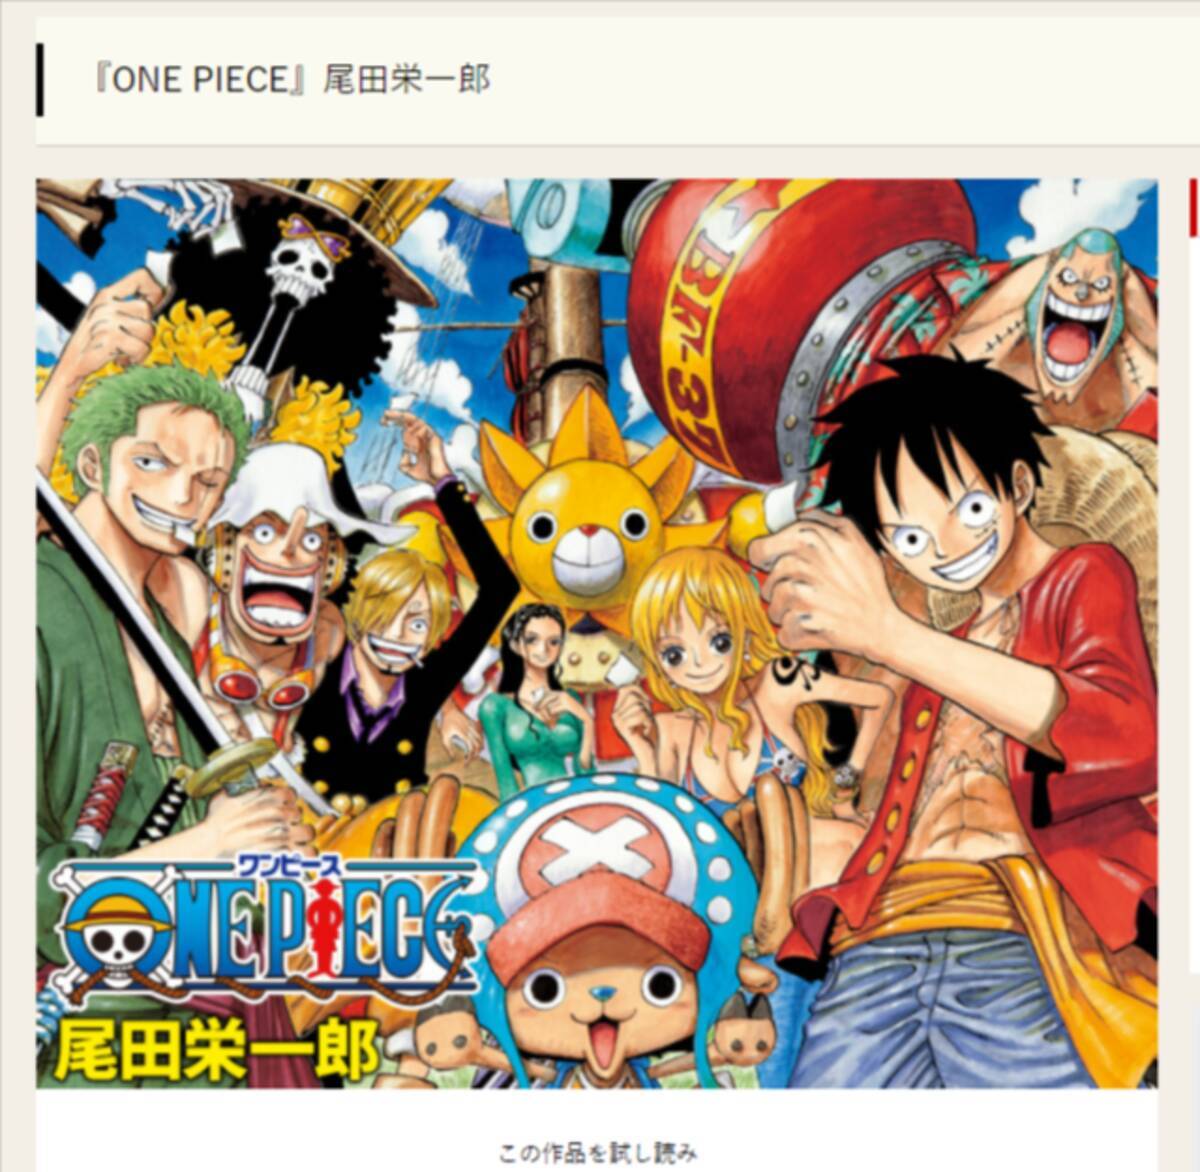 One Piece ルフィとサンジ 2人の 対比 は何を意味する 鳥肌たった 壮大な伏線かも 21年7月21日 エキサイトニュース